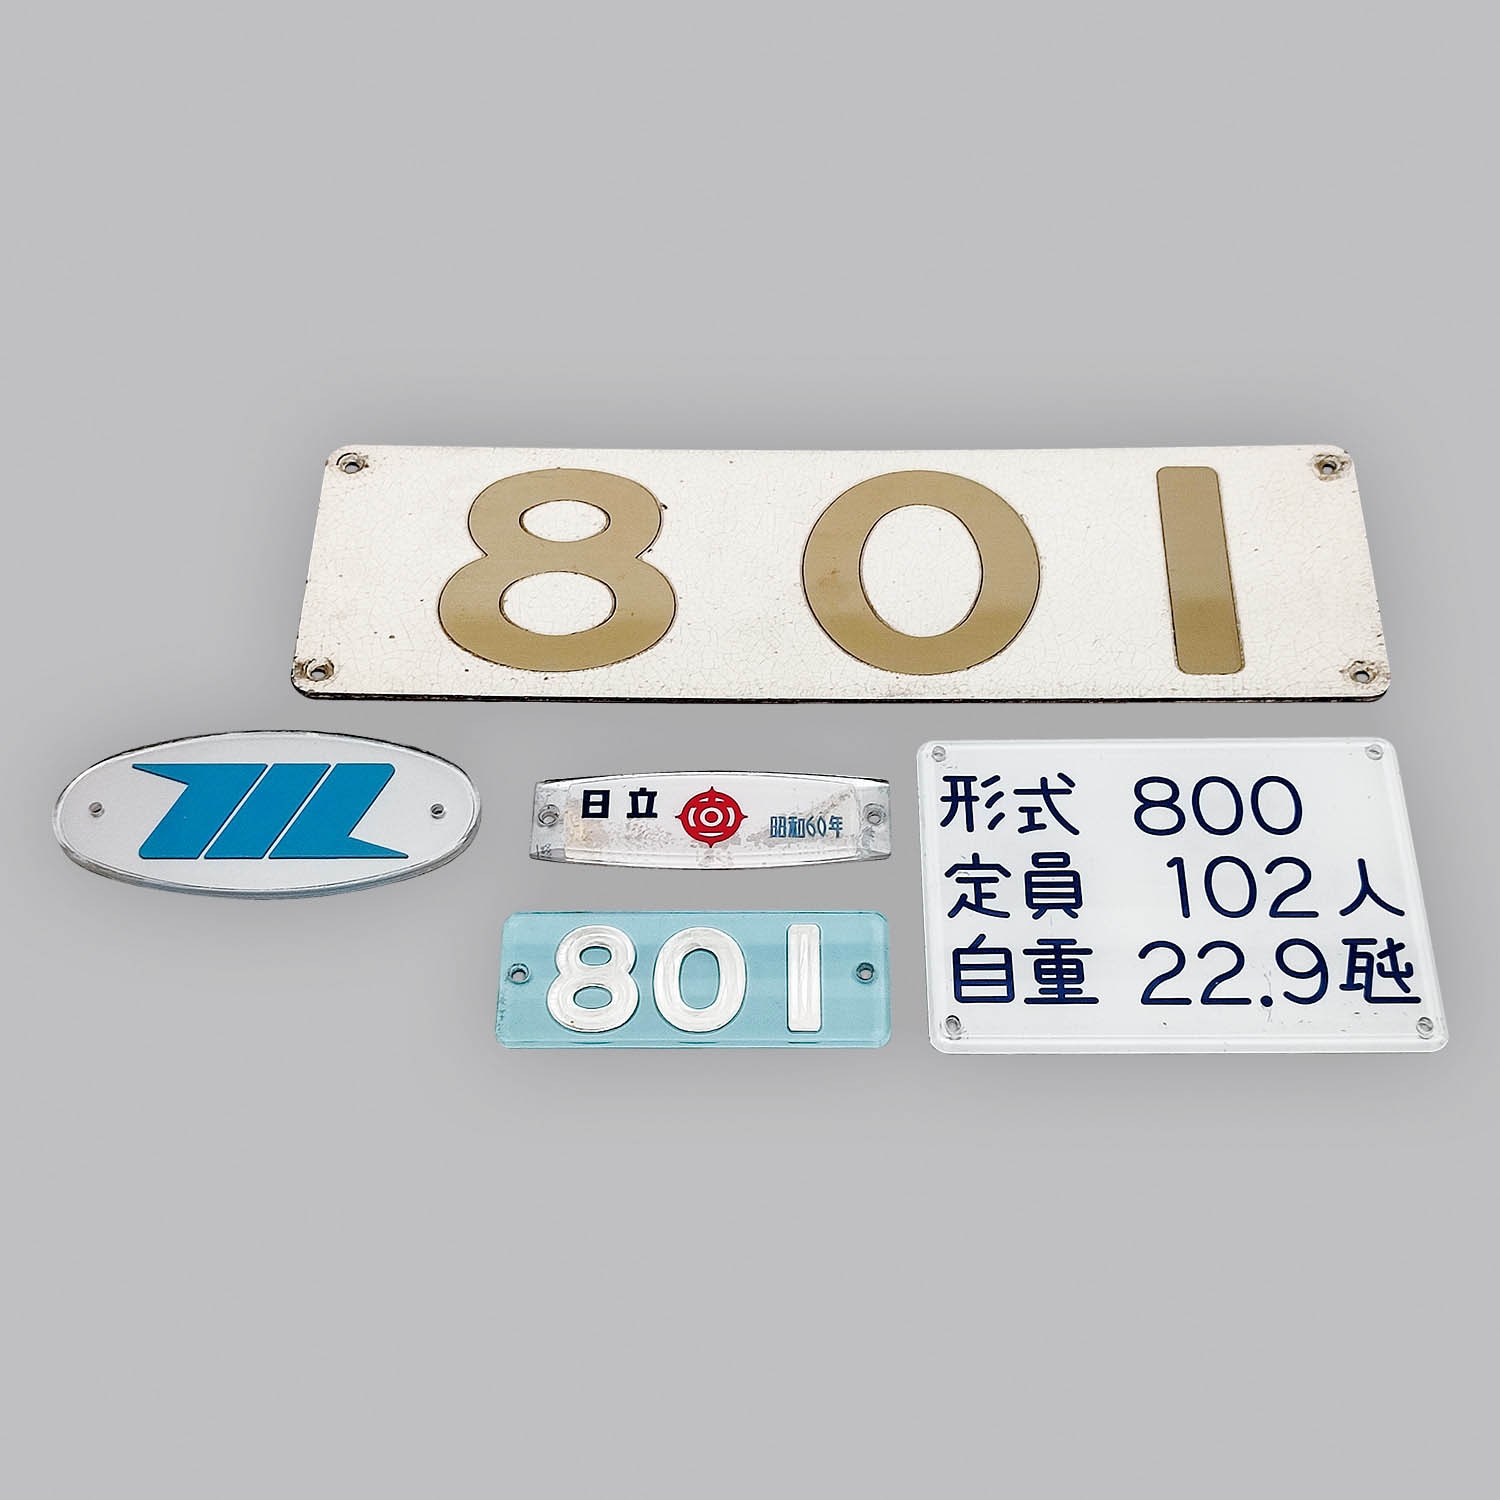 6708] 東京モノレール 801 ナンバープレート、自重板、社内プレート 